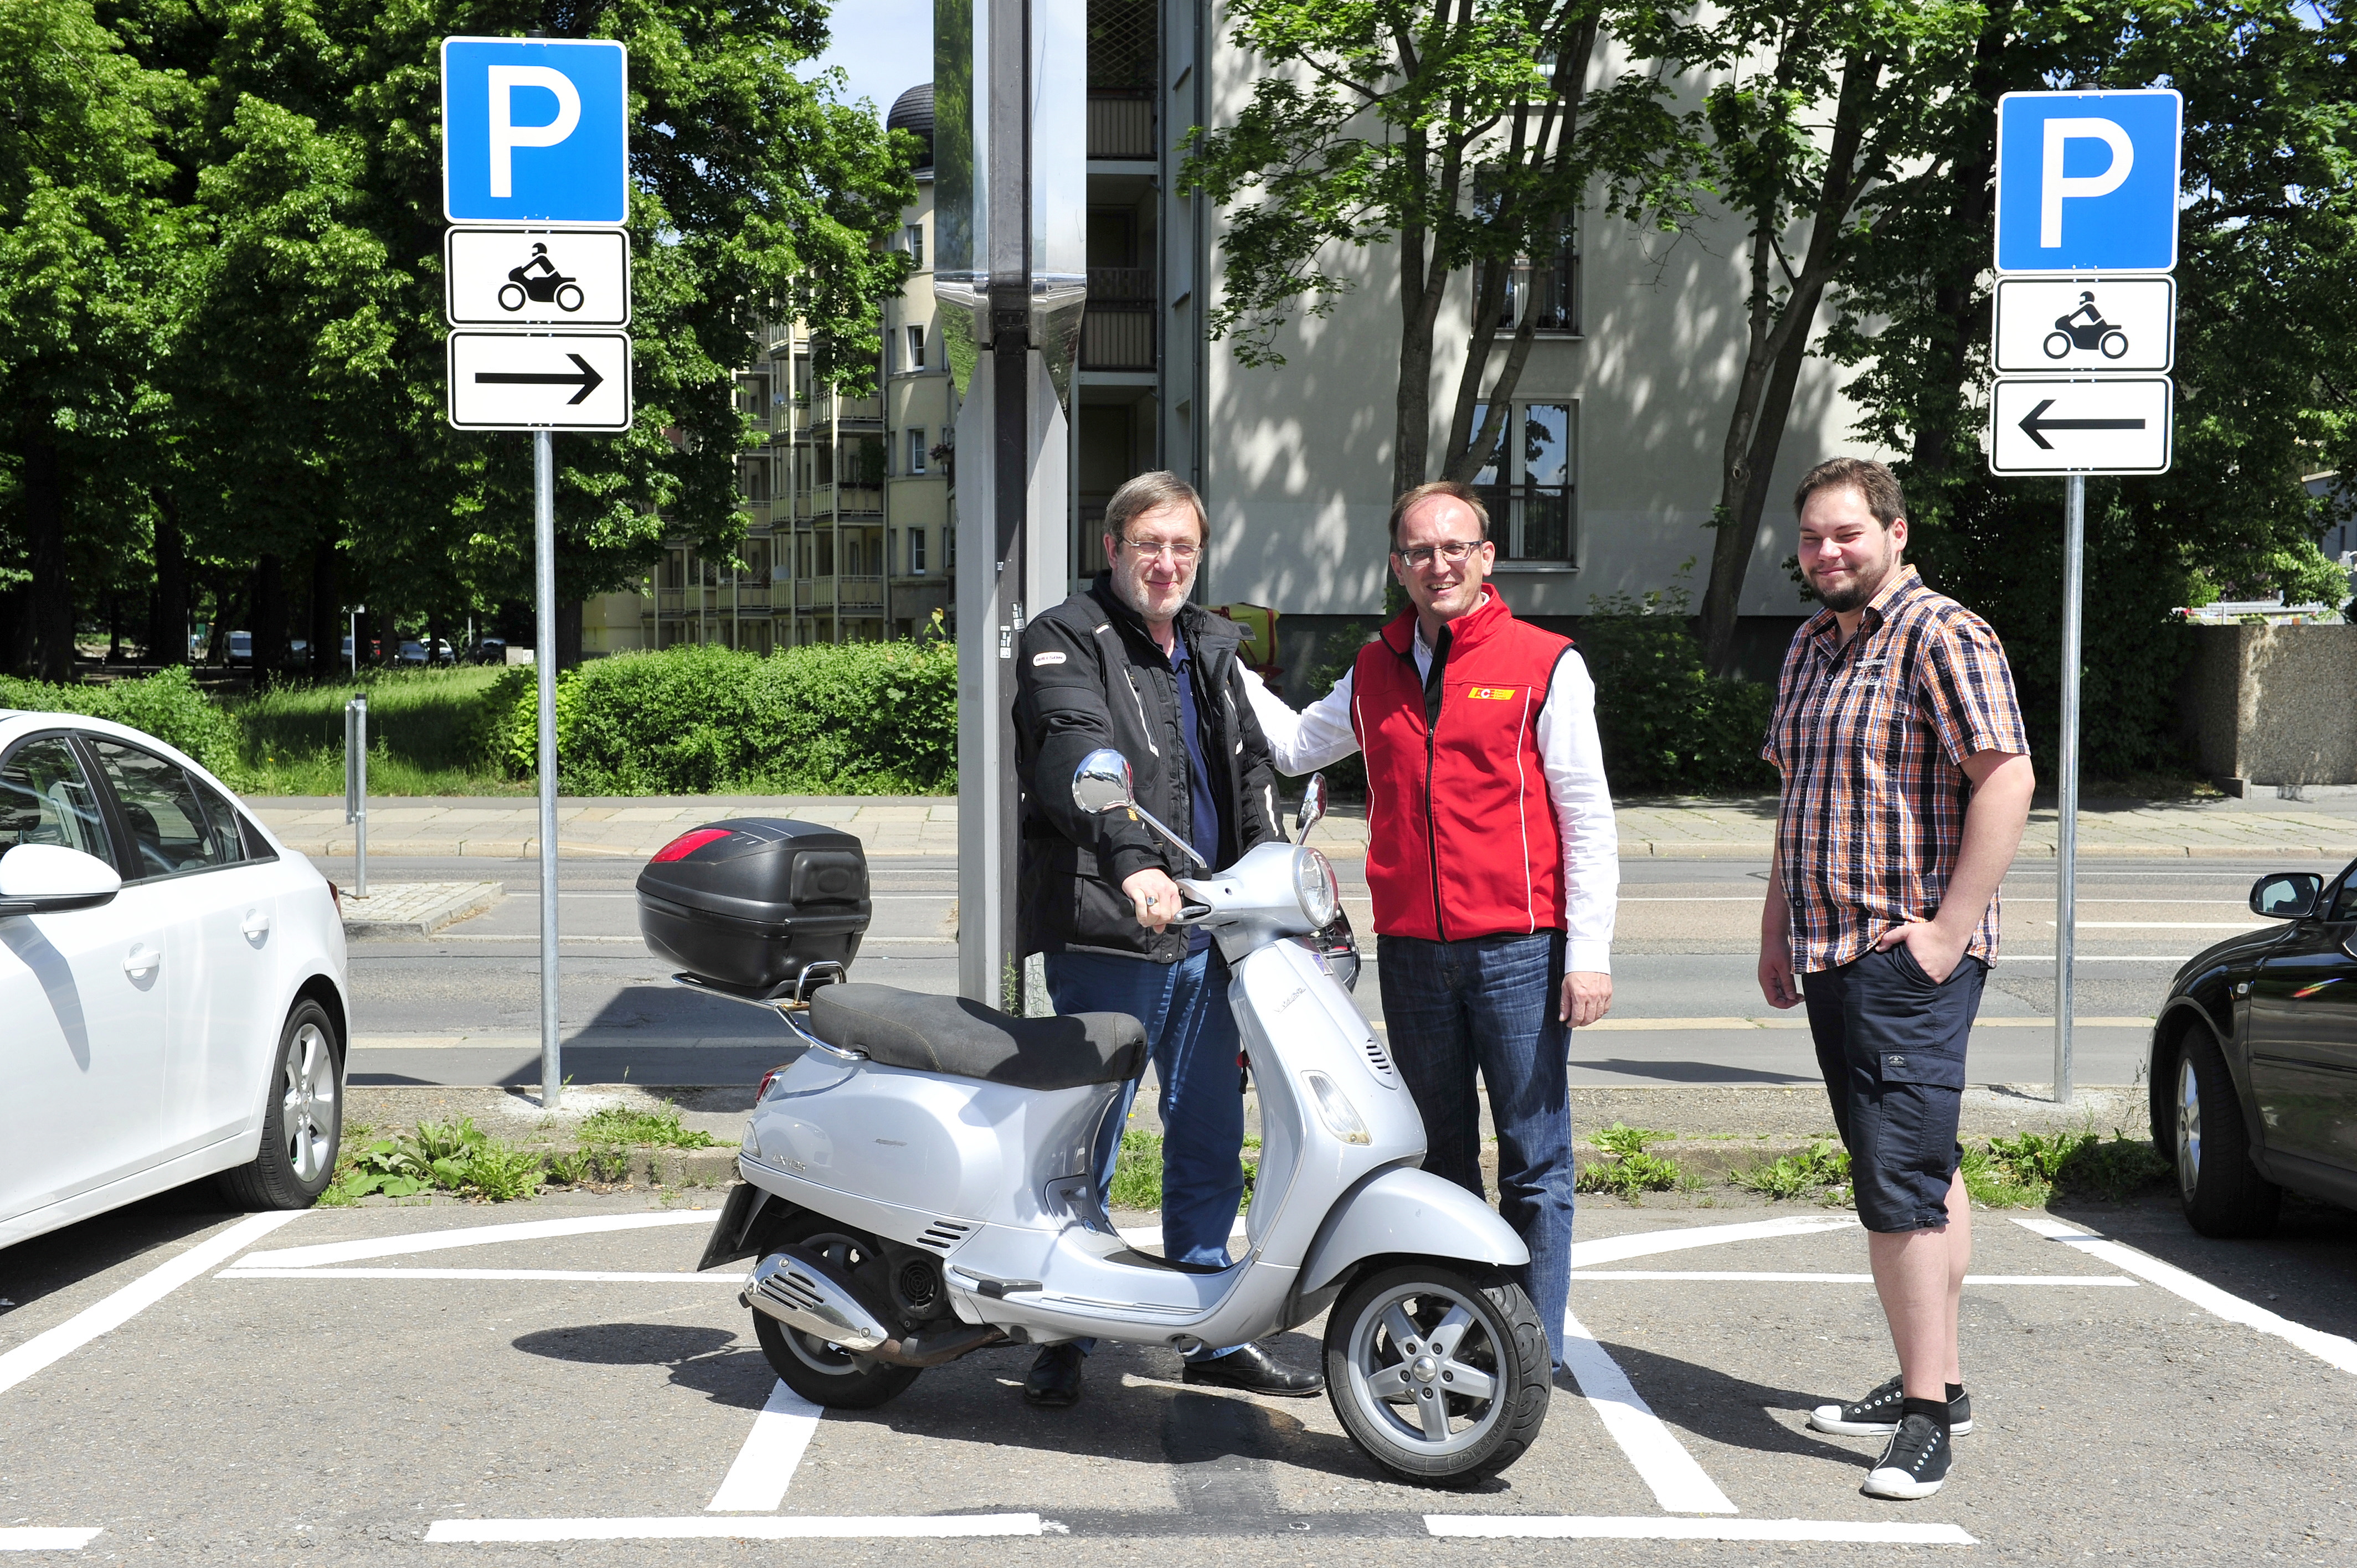 Chemnitz: Auf dem Parkplatz an der Hartmannstrasse wurden 3 Parkplätze für Motorräder eingerichtet. Readakteur Bernd Rippert, Stadtrat Toni Rotter und Stadtrat Jörg Vieweg Foto: Sven Gleisberg